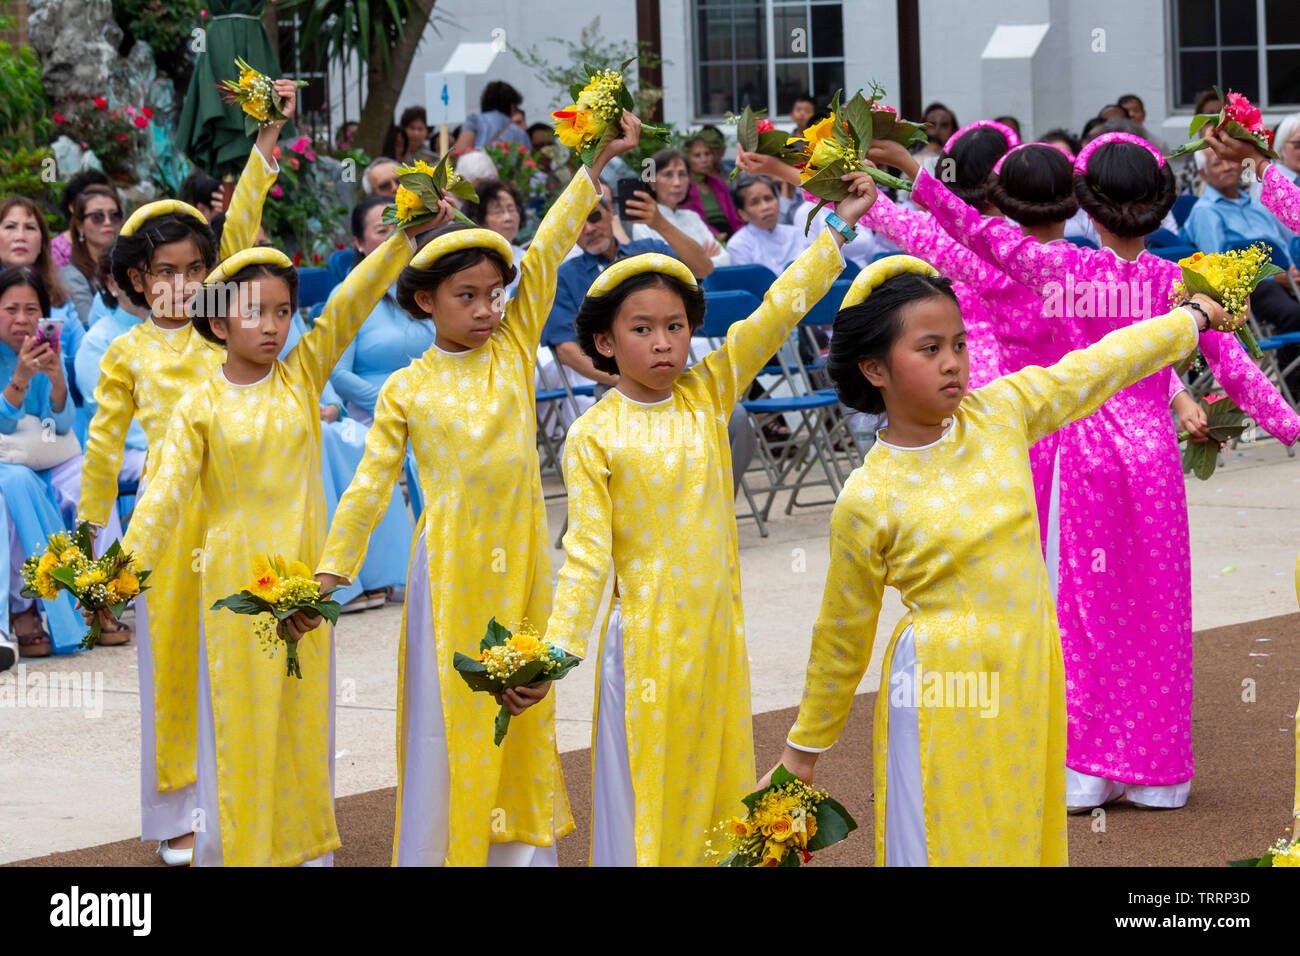 New Orleans, Louisiana - Giorno della Madre viene celebrato con una processione e la danza dei fiori e messa a Nostra Signora di Lavang missione. La chiesa serve vie Foto Stock